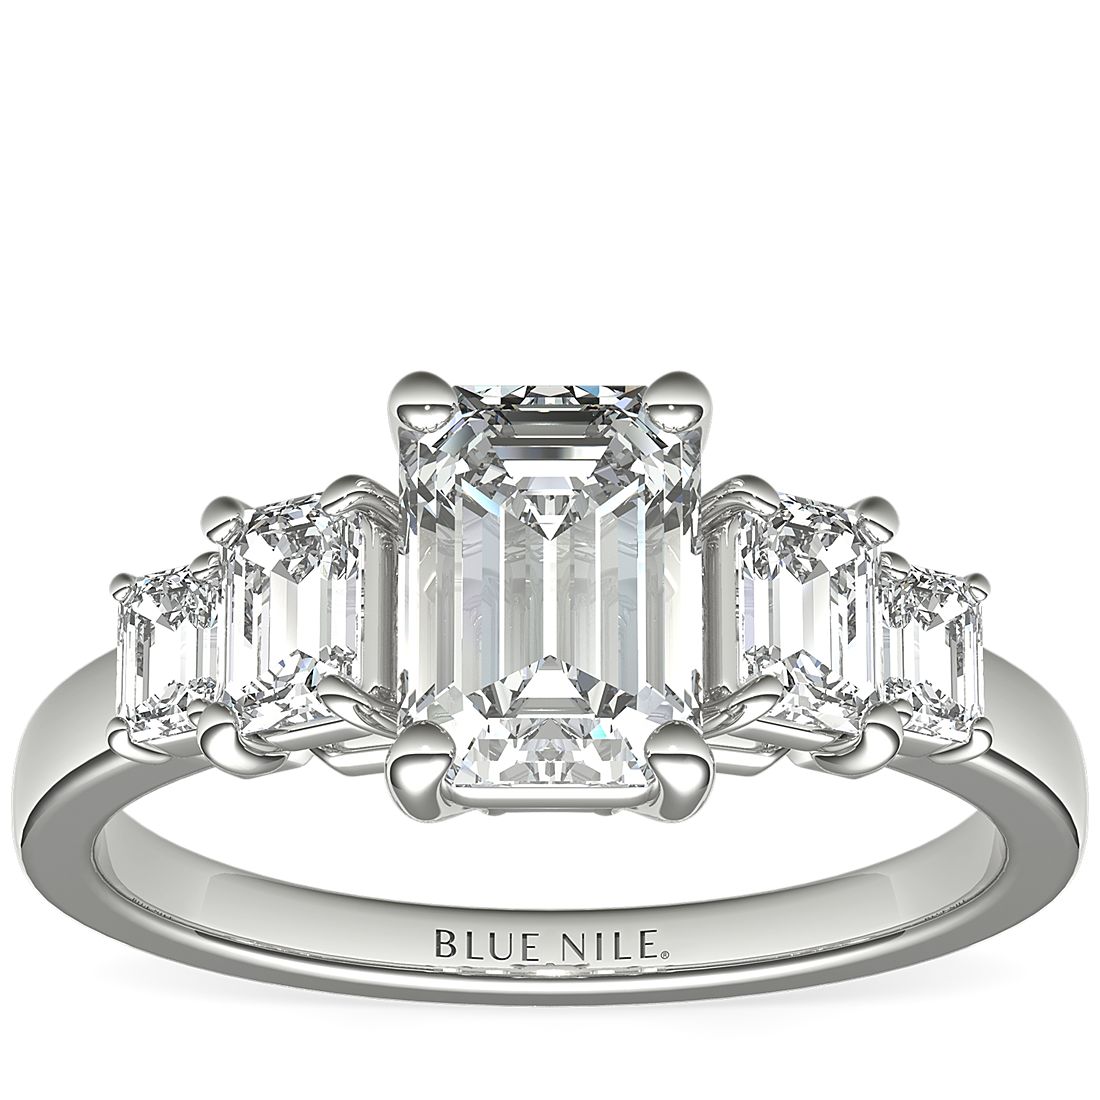 3 Carat Five-Stone Emerald-Cut Diamond Engagement Ring in Platinum